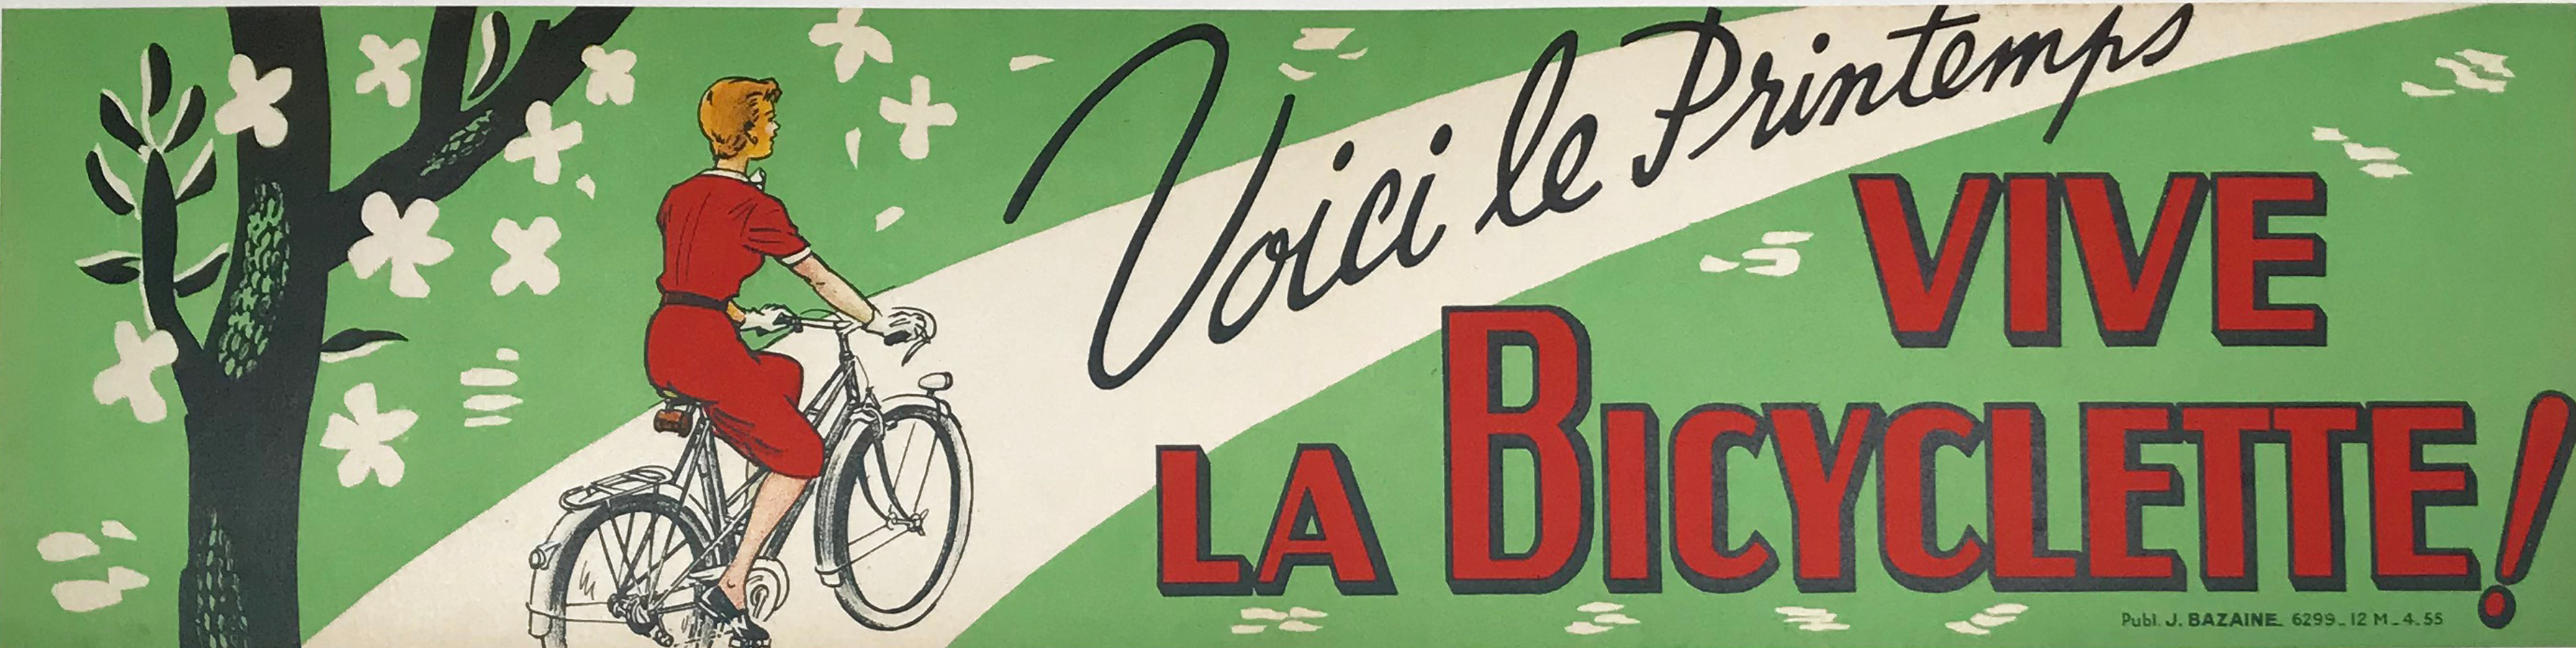 Vive La Bicyclette... Voici le Printemps Original Vintage Cycling Poster by Publ. J Bazaine Linen Backed